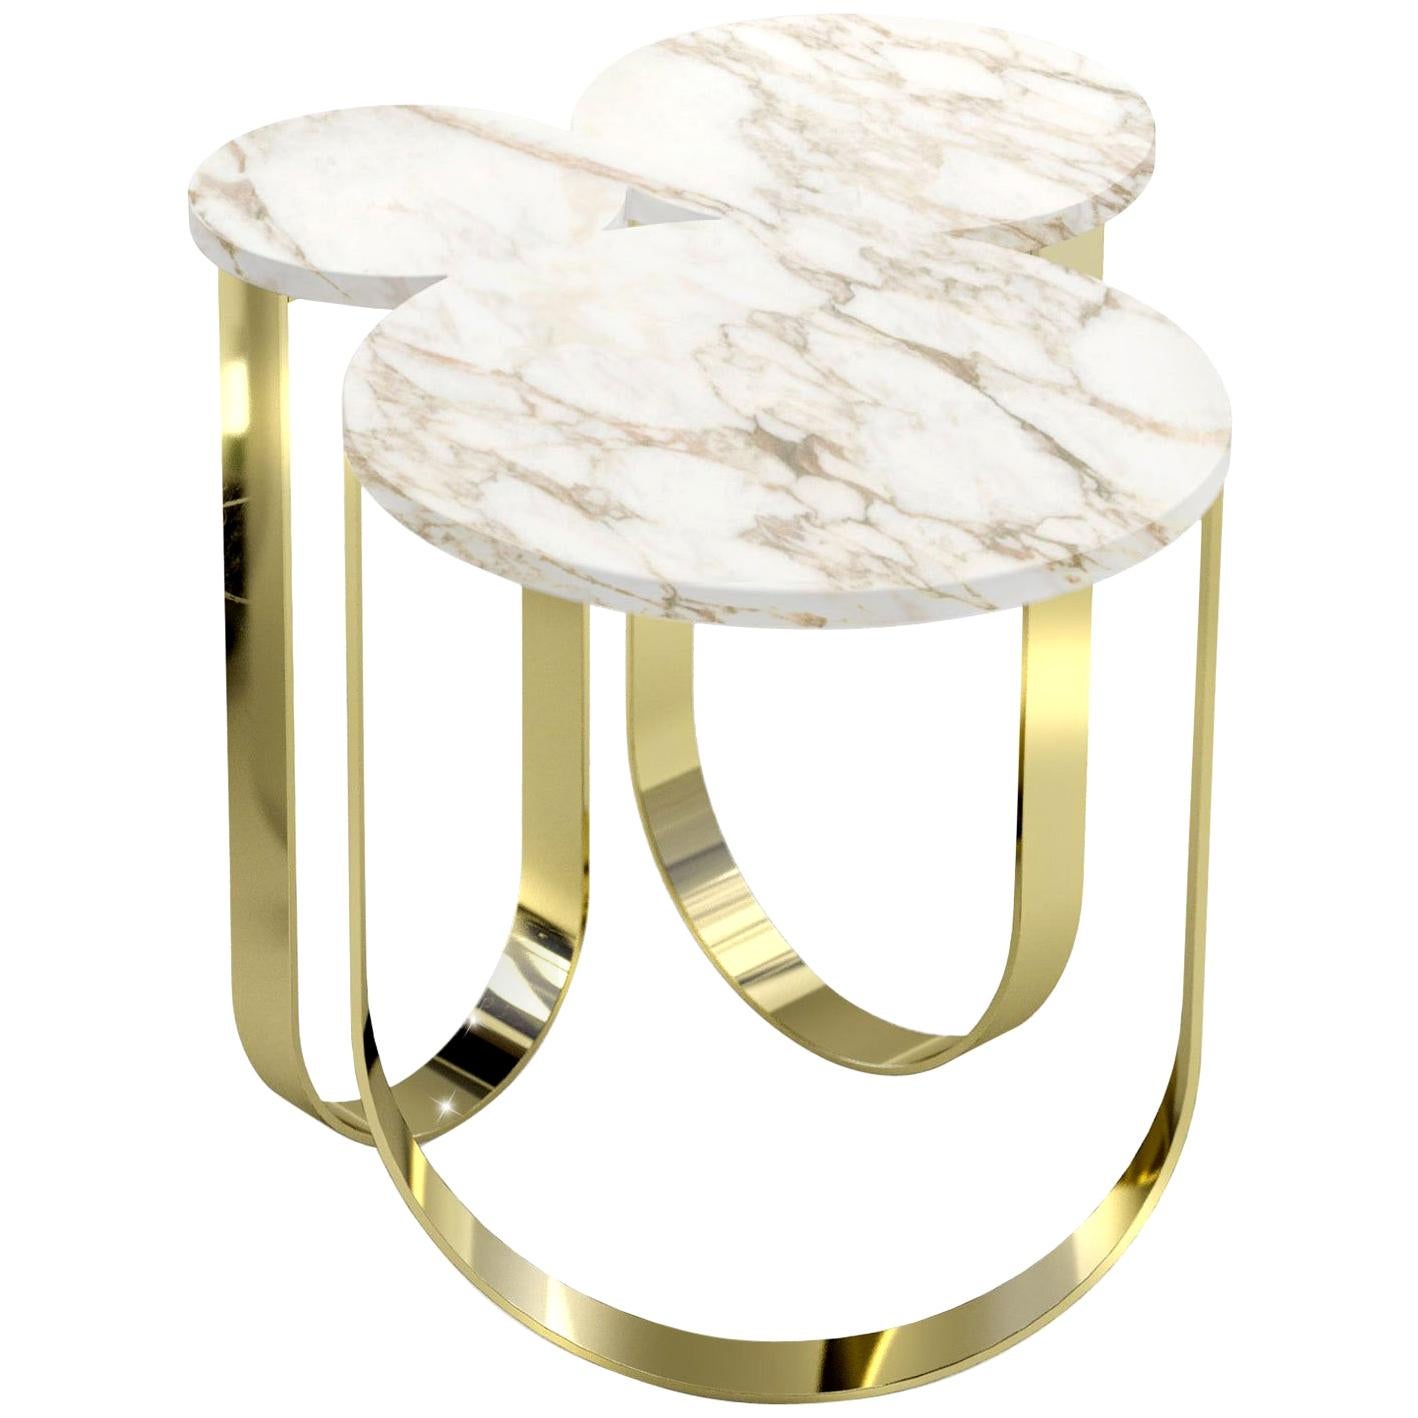 Table d'appoint ou d'extrémité en marbre blanc Paonazzo miroir laiton design de collection Italie